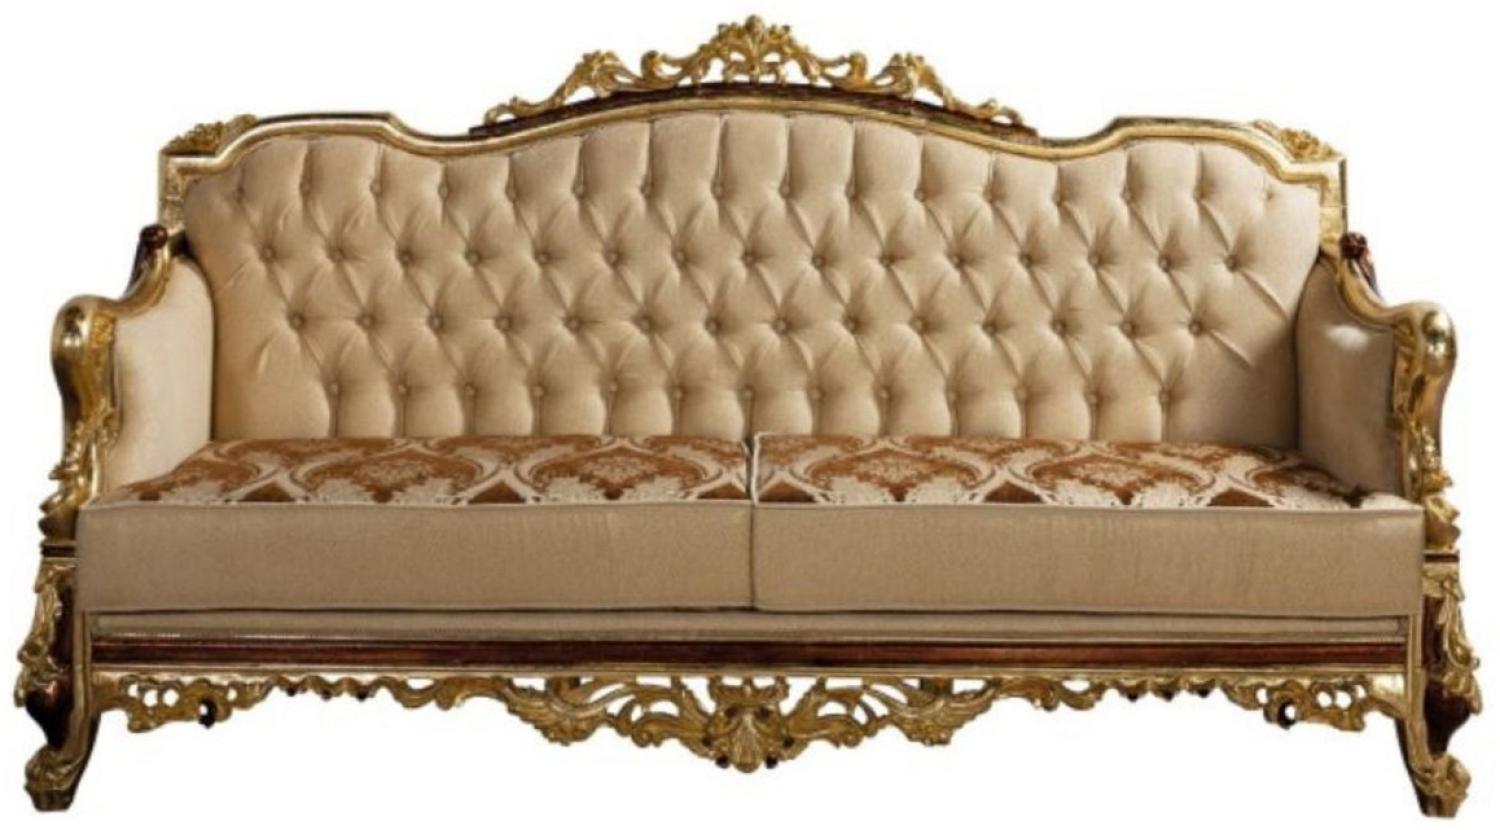 Casa Padrino Luxus Barock Sofa Beige / Braun / Gold - Prunkvolles Wohnzimmer Sofa mit Muster - Barock Wohnzimmer Möbel Bild 1